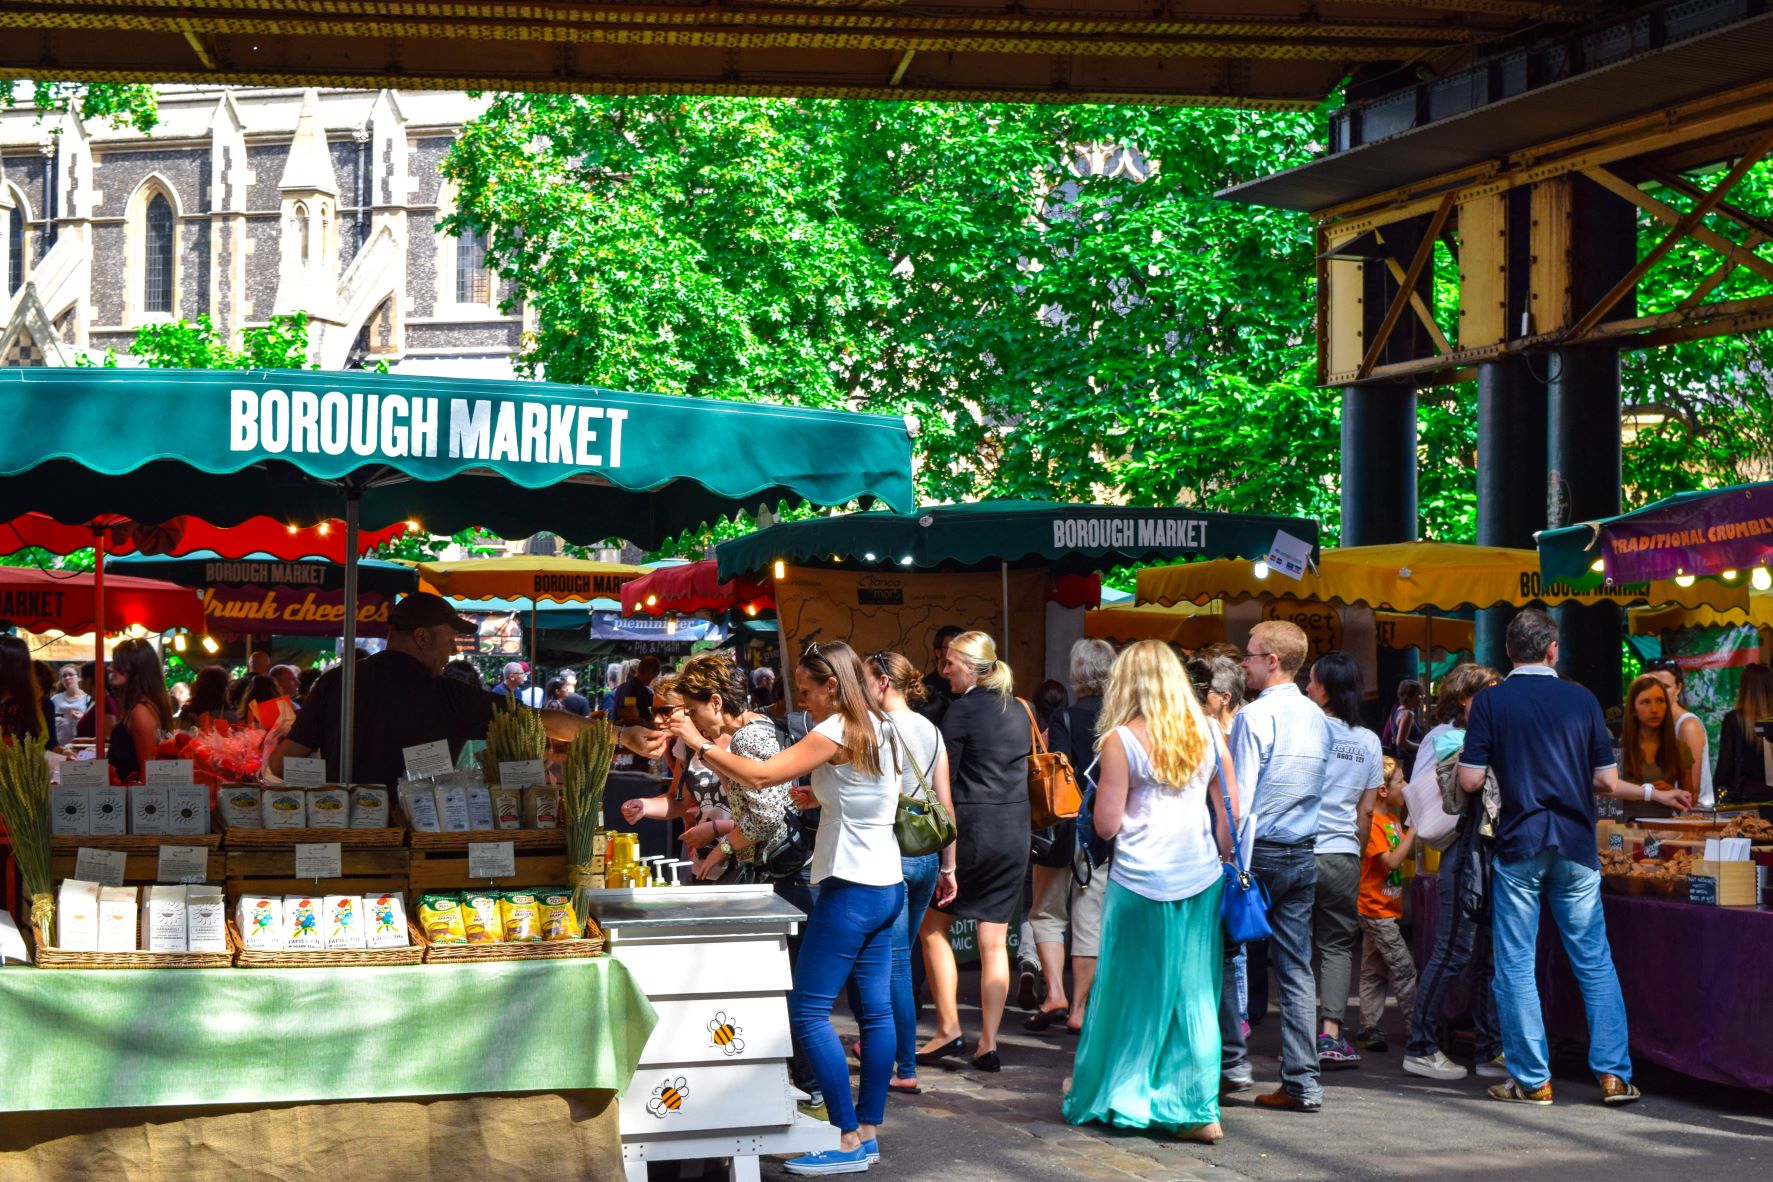 outdoor market scene